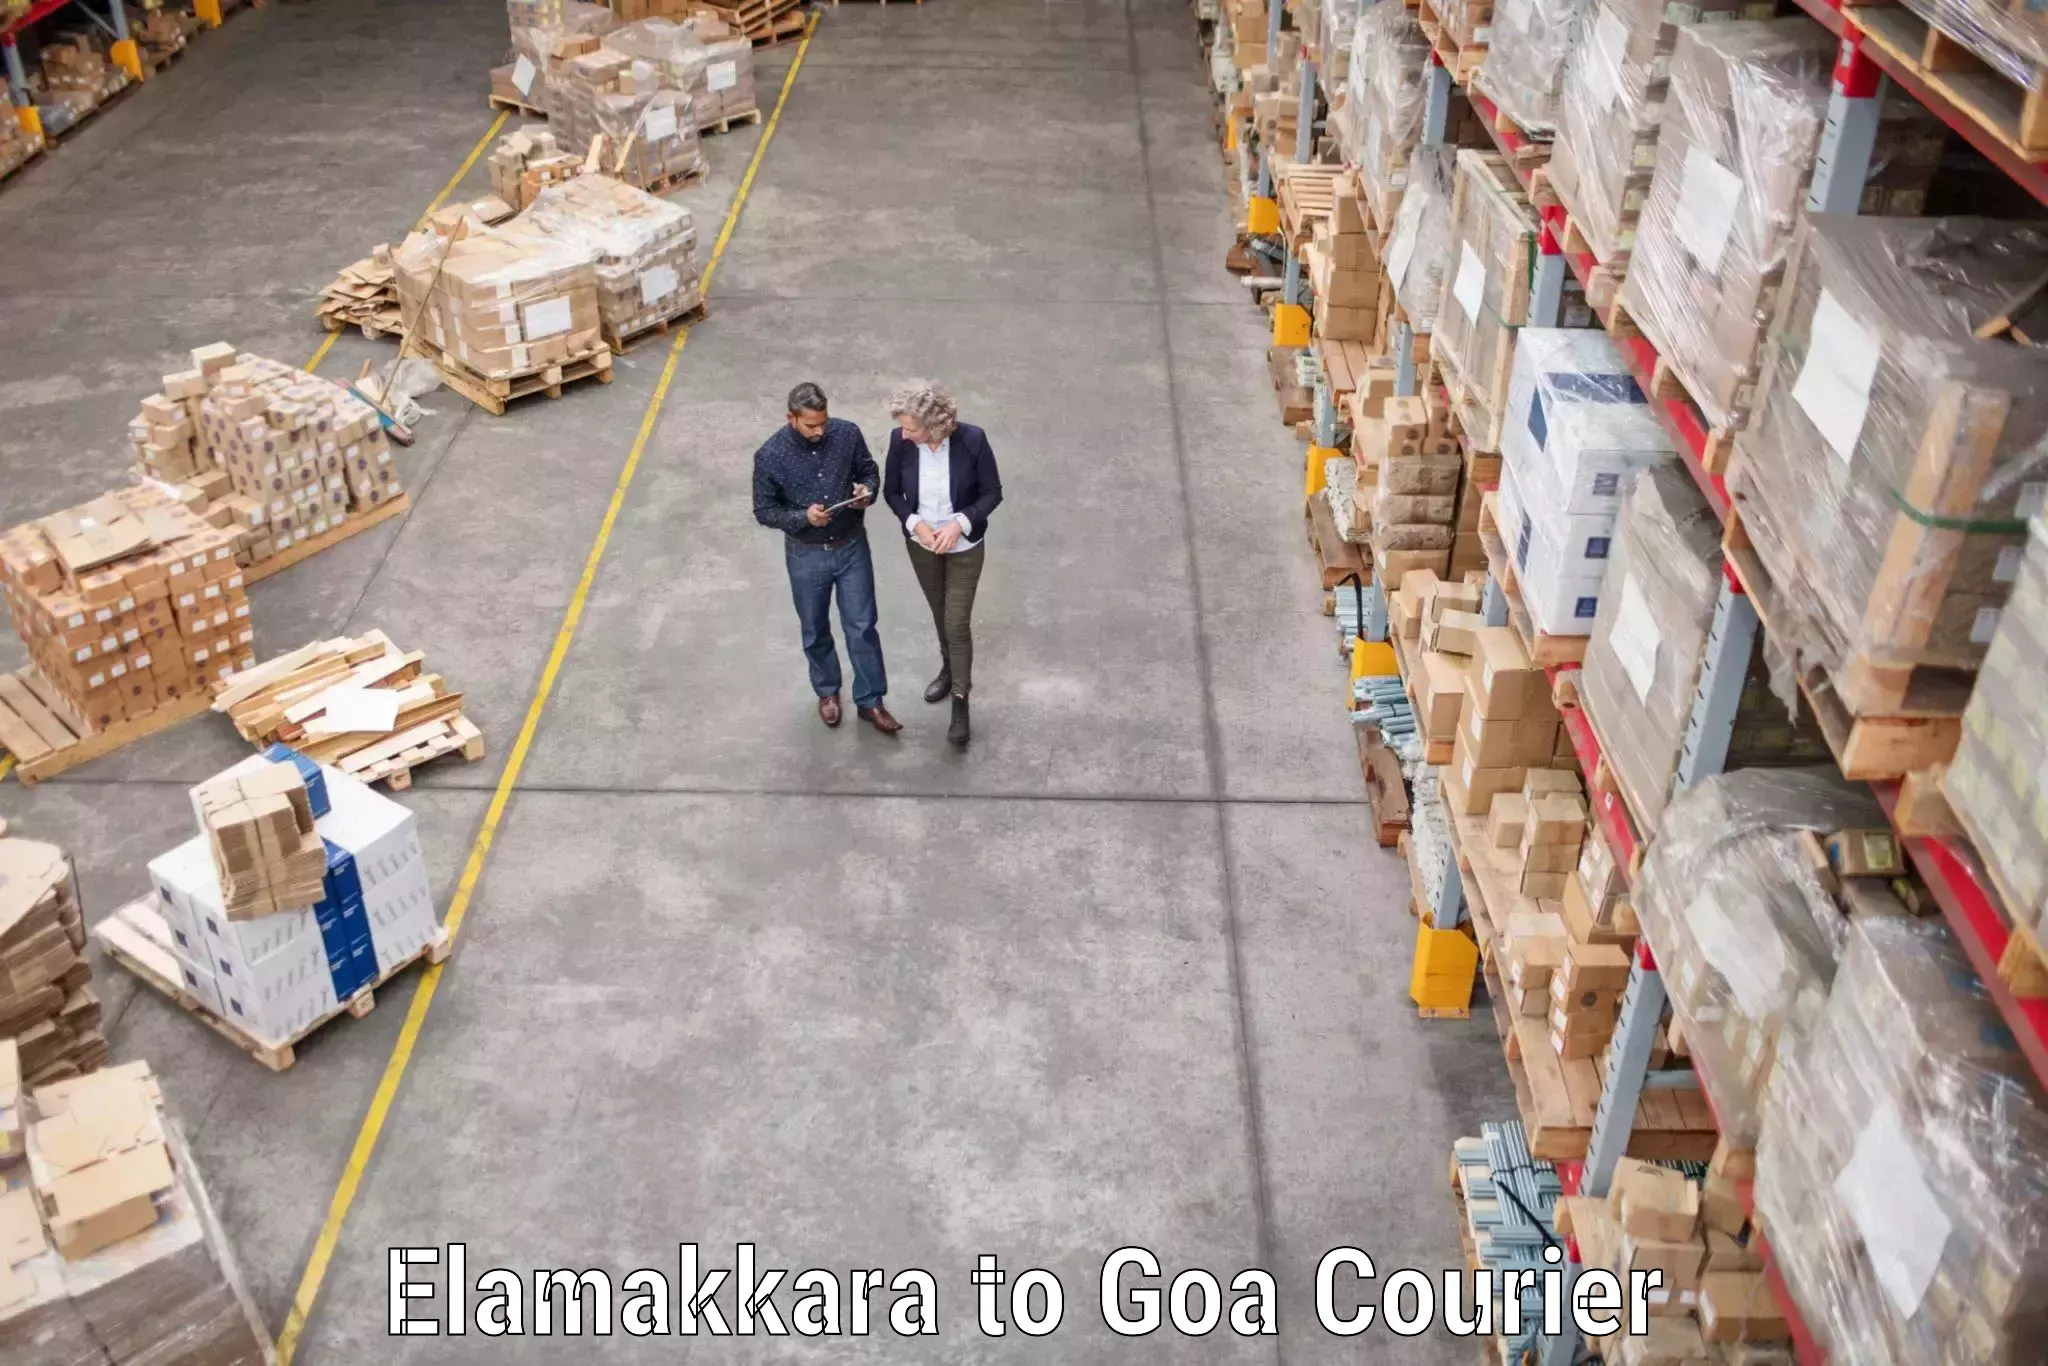 Furniture transport experts Elamakkara to Goa